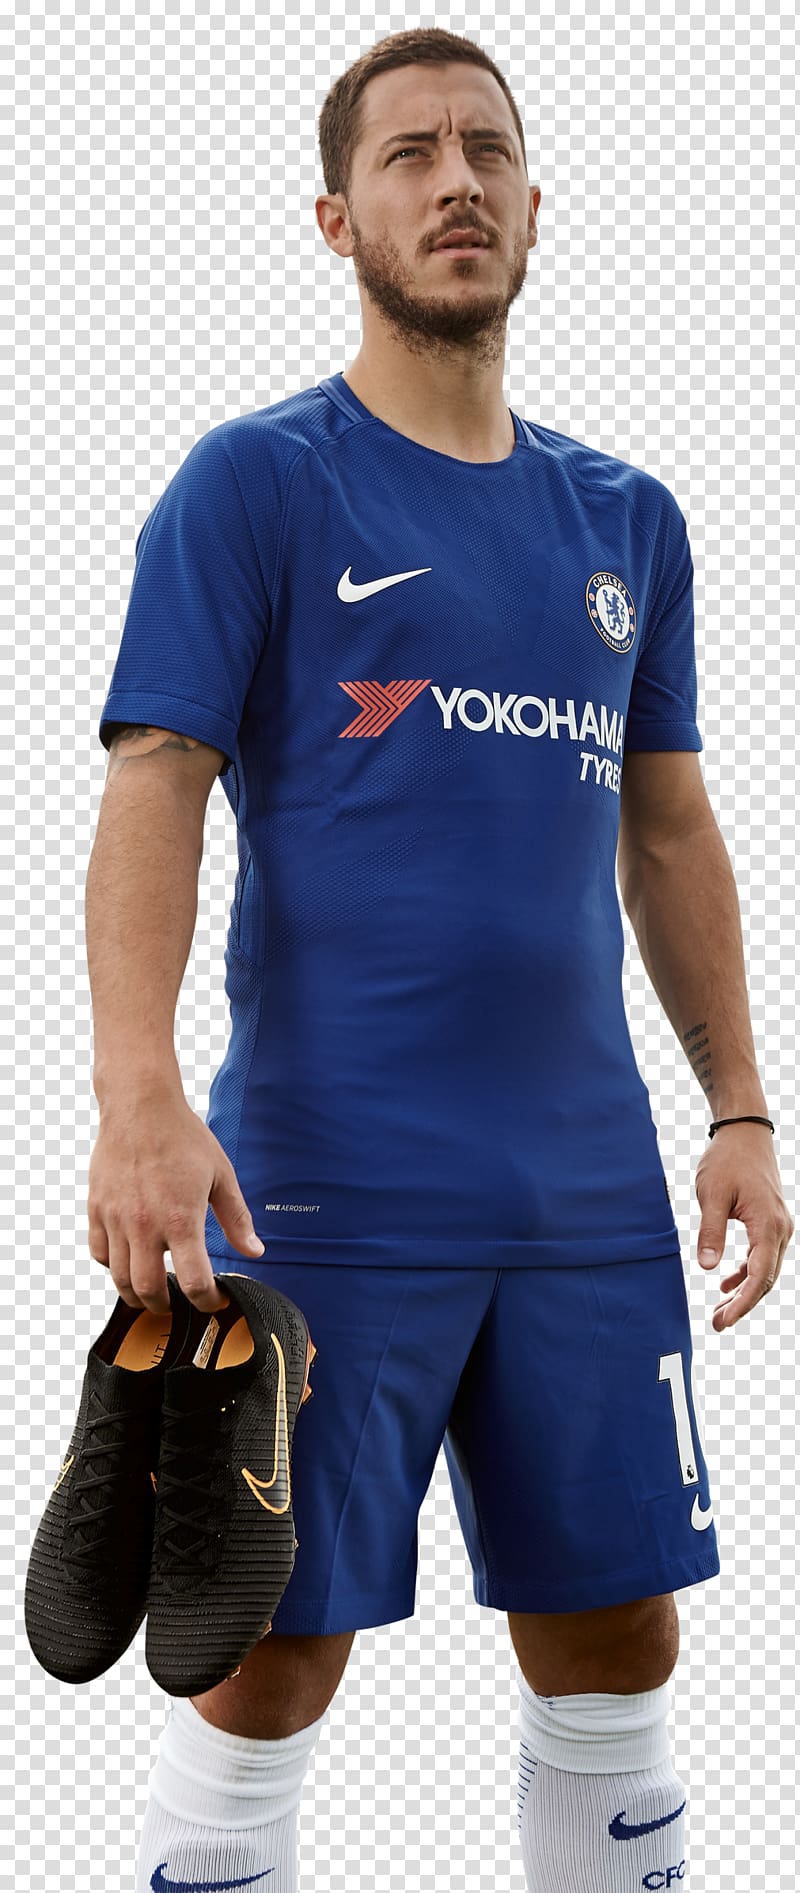 Eden Hazard Chelsea F.C. Premier League Football boot Nike, premier league transparent background PNG clipart